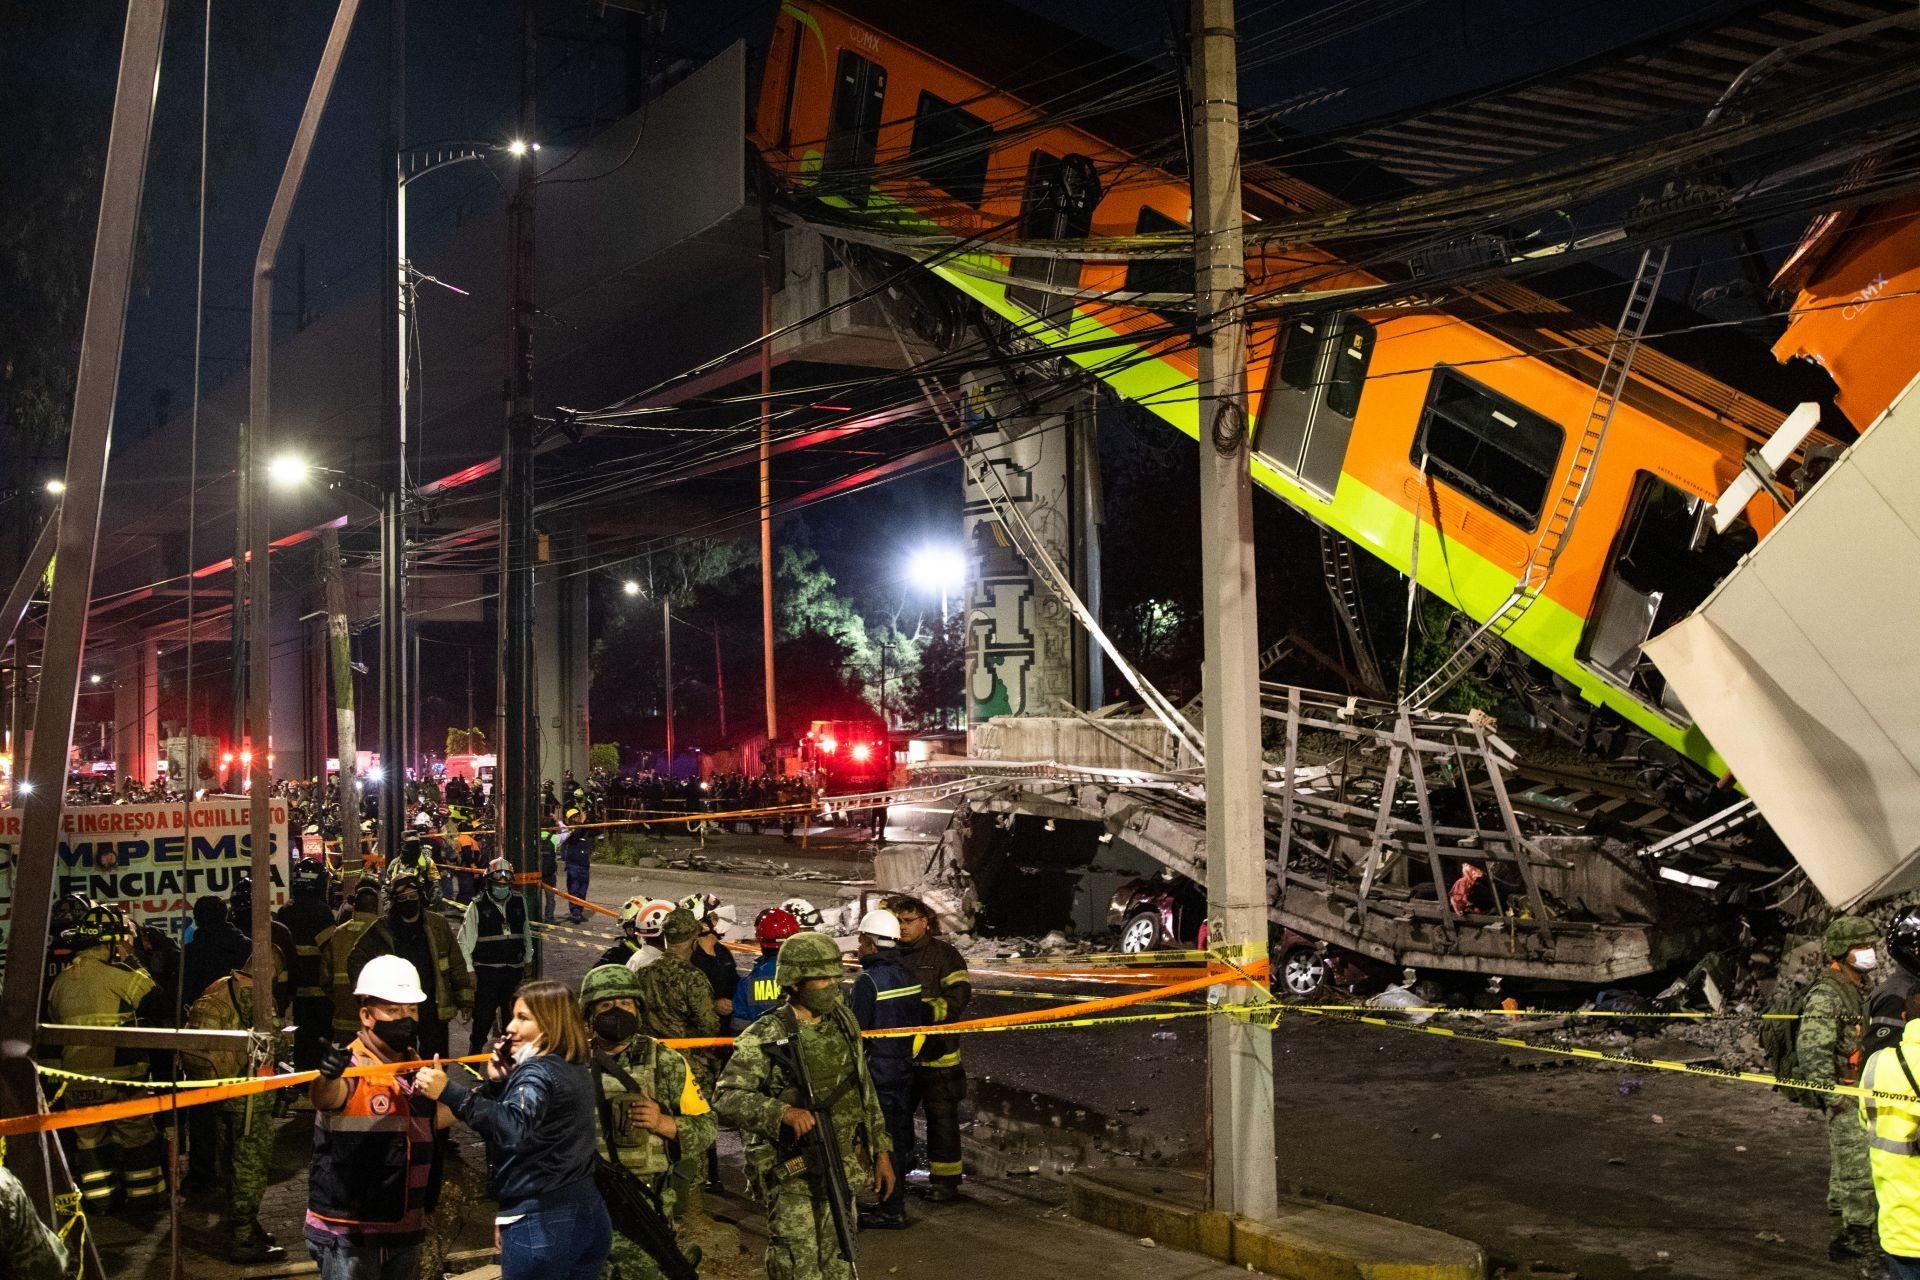 Juez vincula a proceso a ocho exfuncionarios por colapso de la Línea 12 del Metro